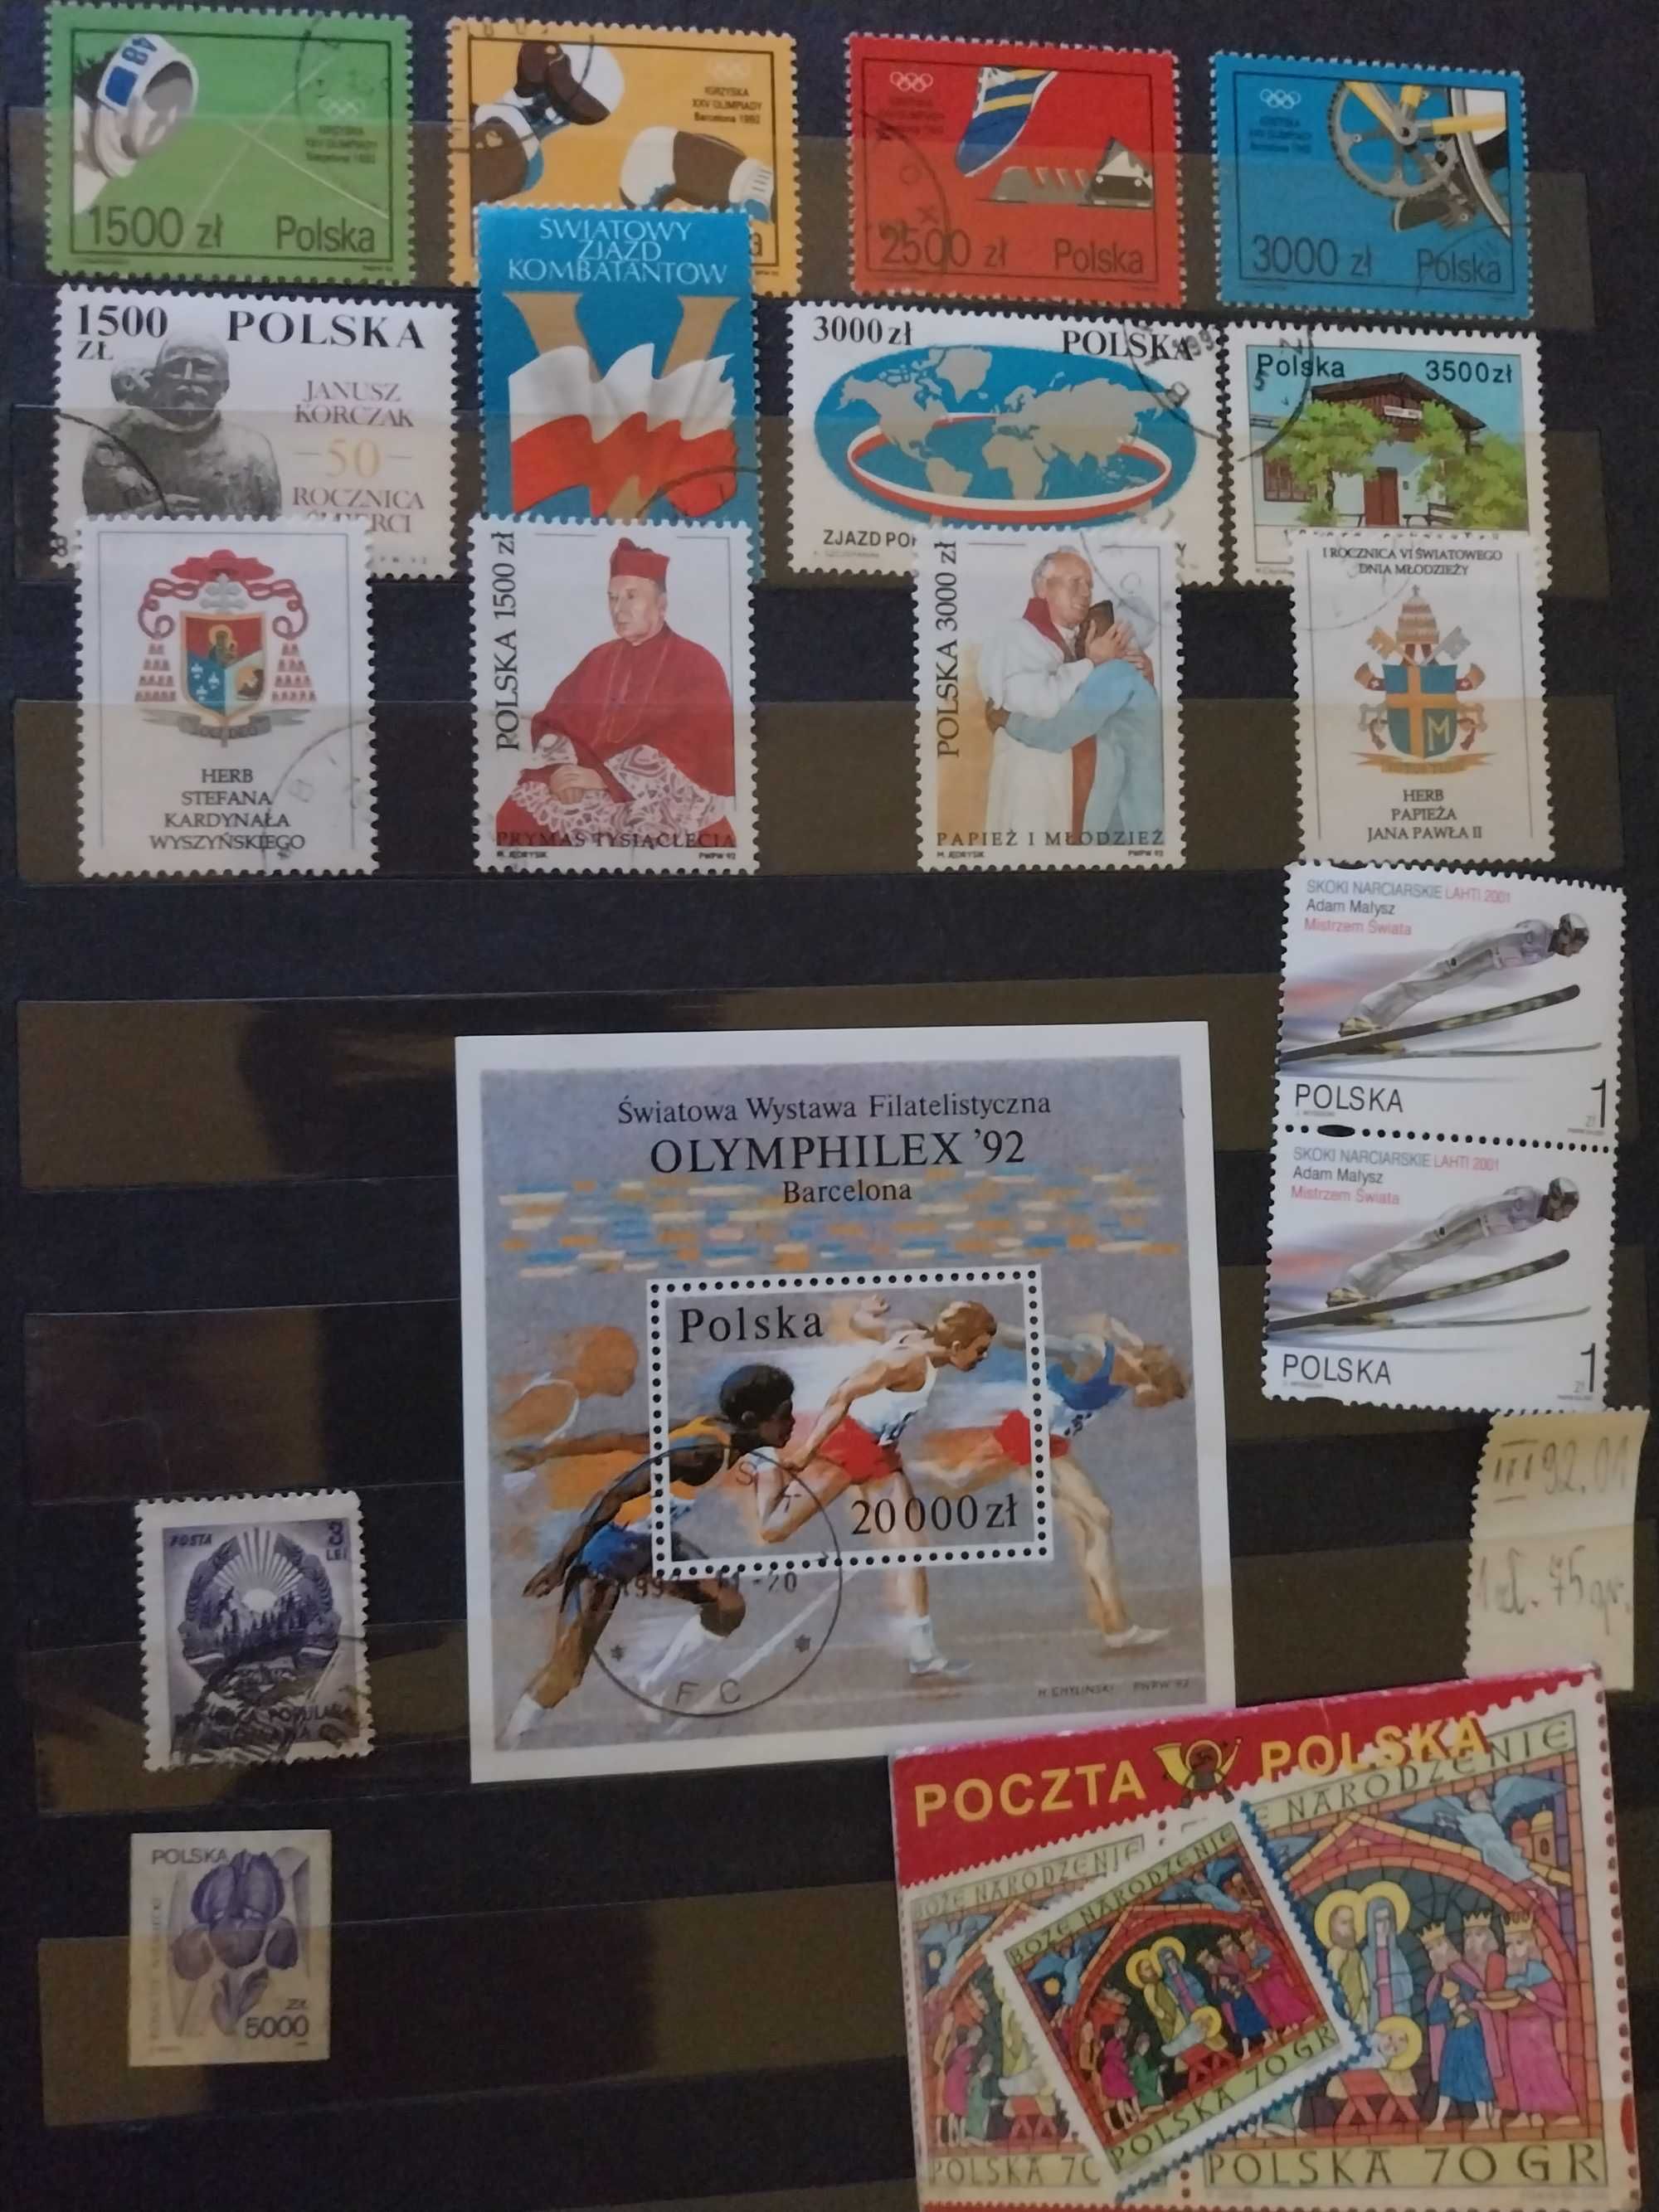 Znaczki pocztowe